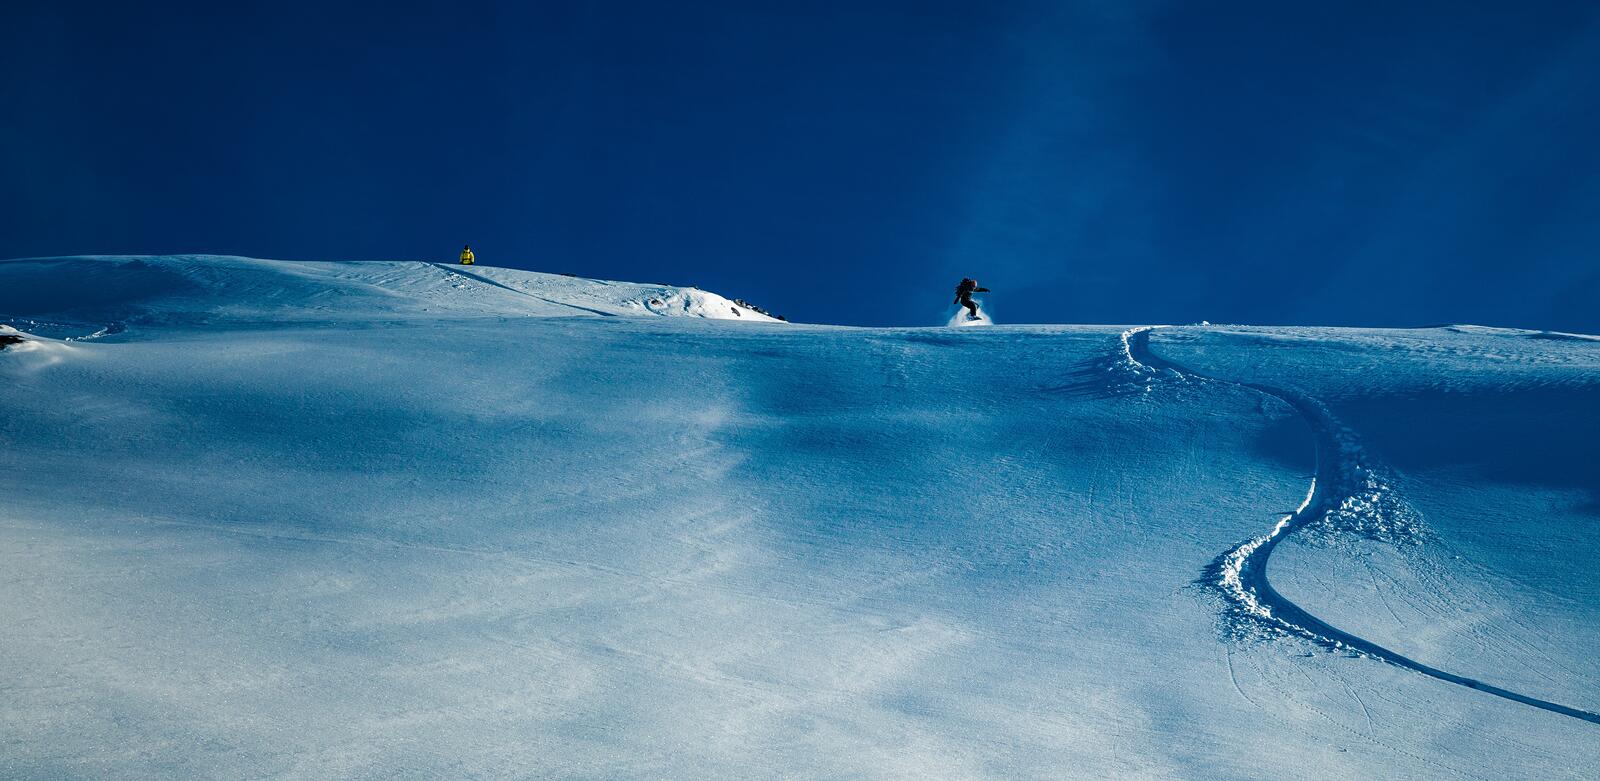 免费照片单板滑雪者在雪坡上滑行